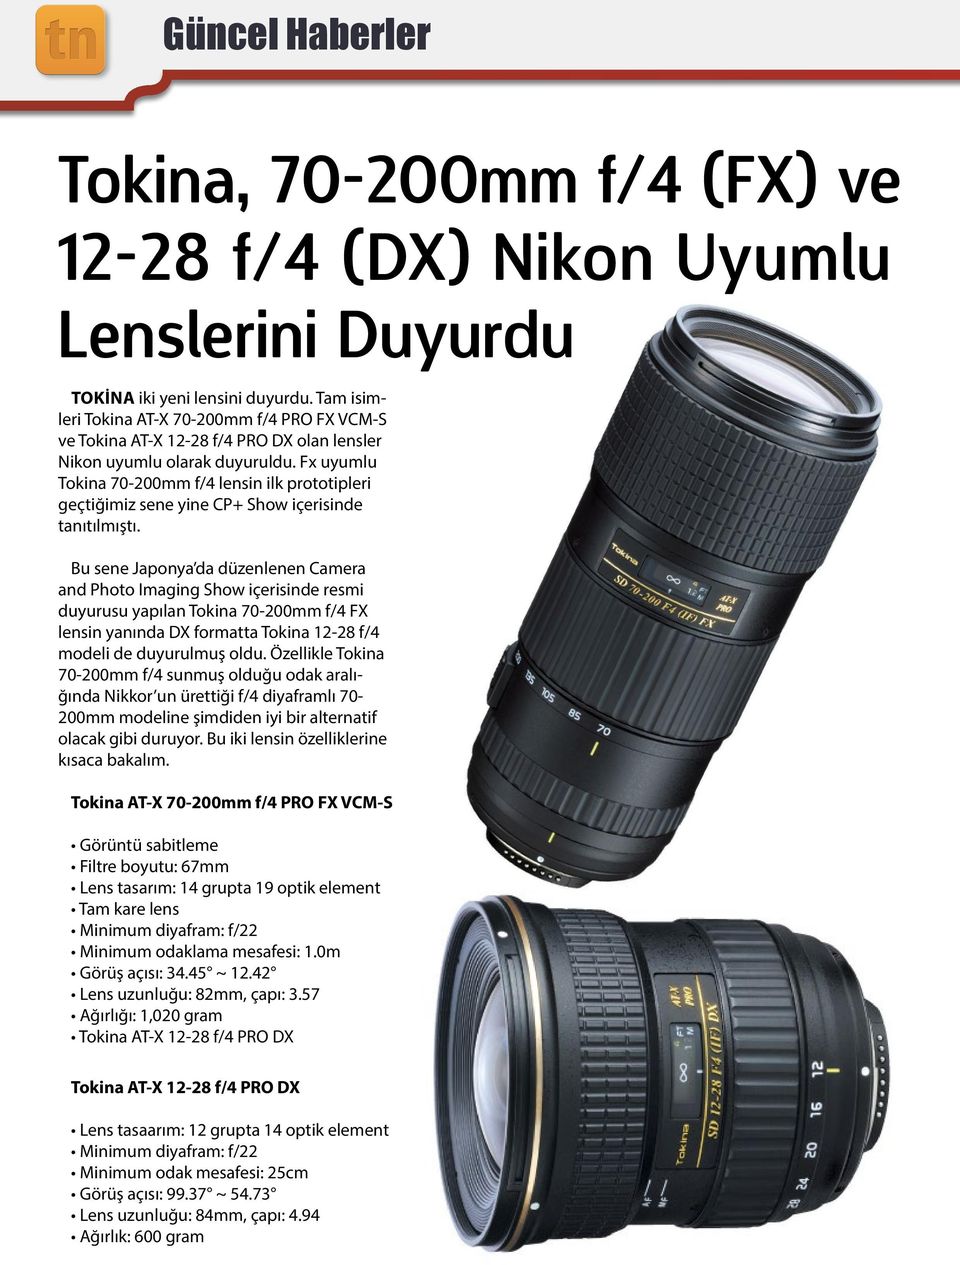 Fx uyumlu Tokina 70-200mm f/4 lensin ilk prototipleri geçtiğimiz sene yine CP+ Show içerisinde tanıtılmıştı.